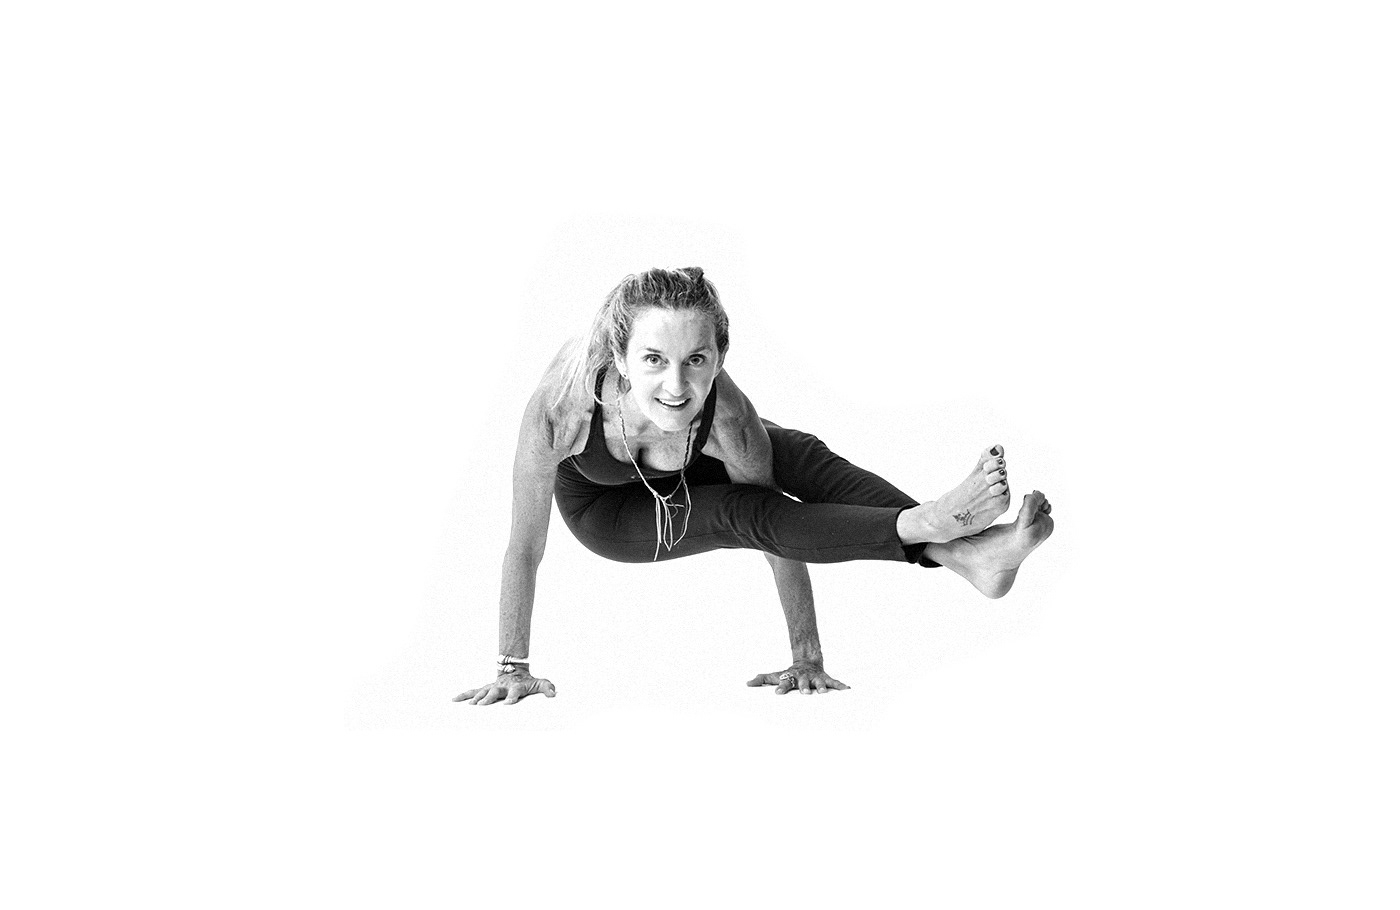 Yoga Instructor gym lifestyle mantra spirit Health exercise